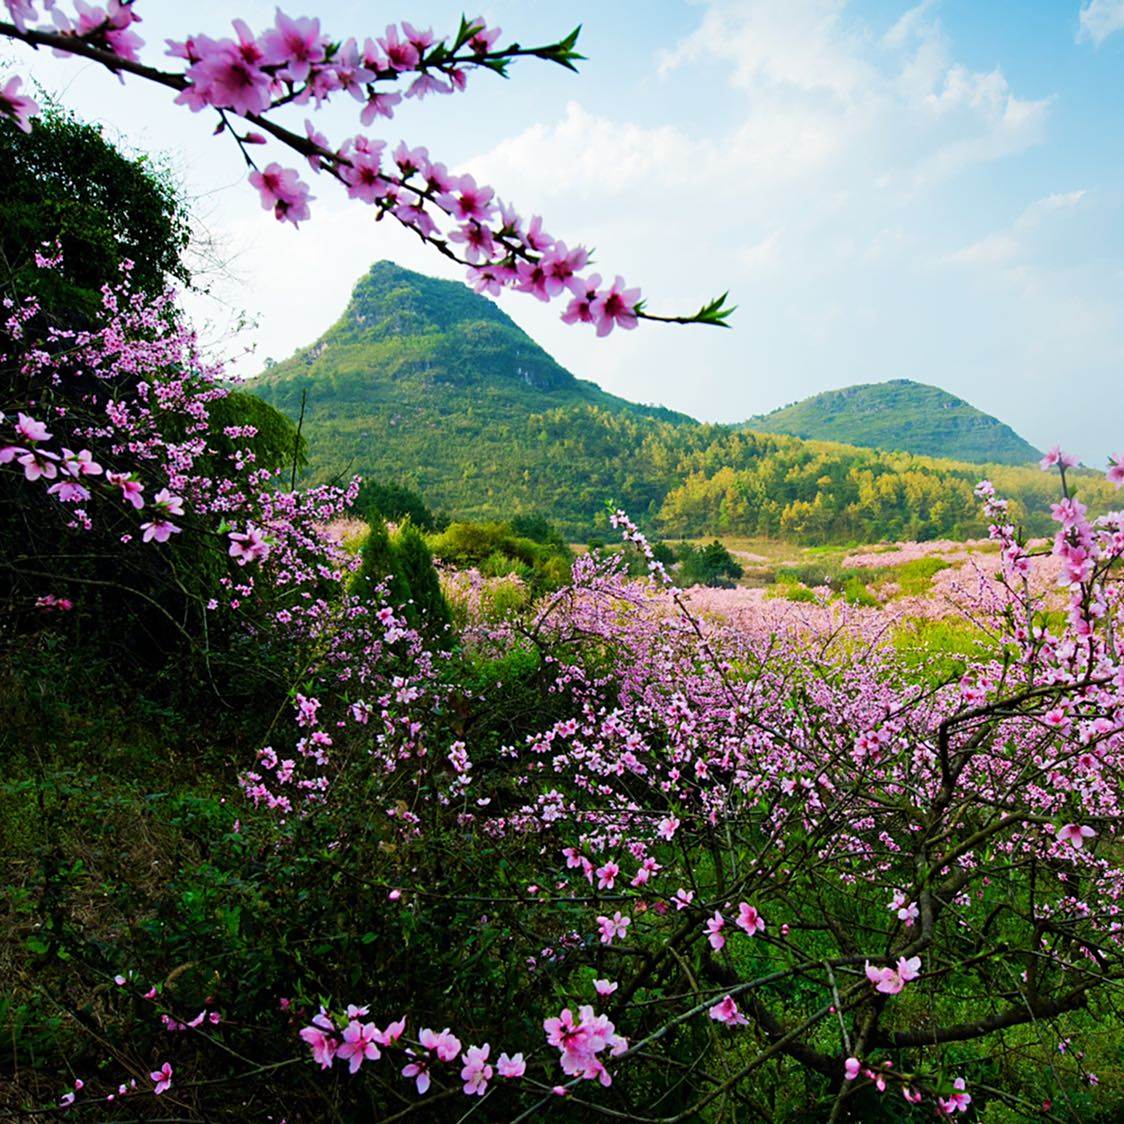 阳春三月,桃花正艳,向人们展现着桂北山林最美的春天